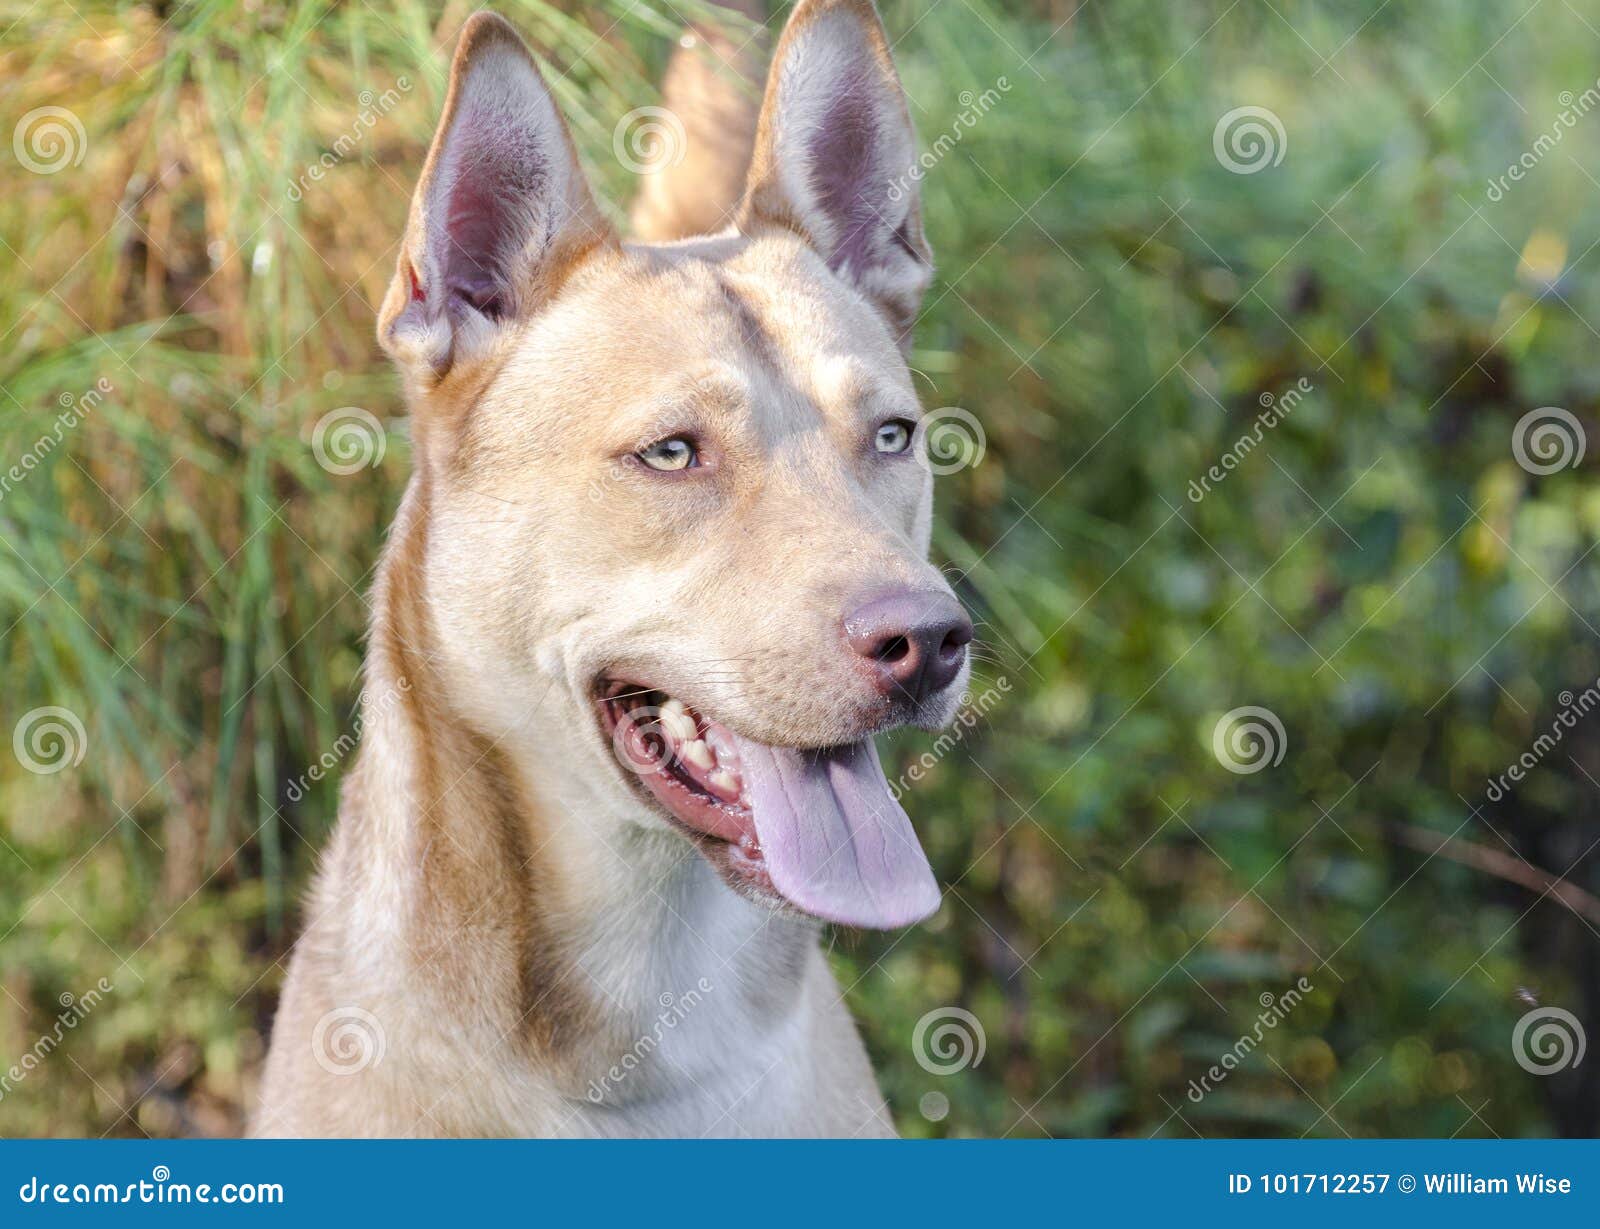 Pharaoh Hound Siberian Husky Mixed Breed Dog Stock Image ...